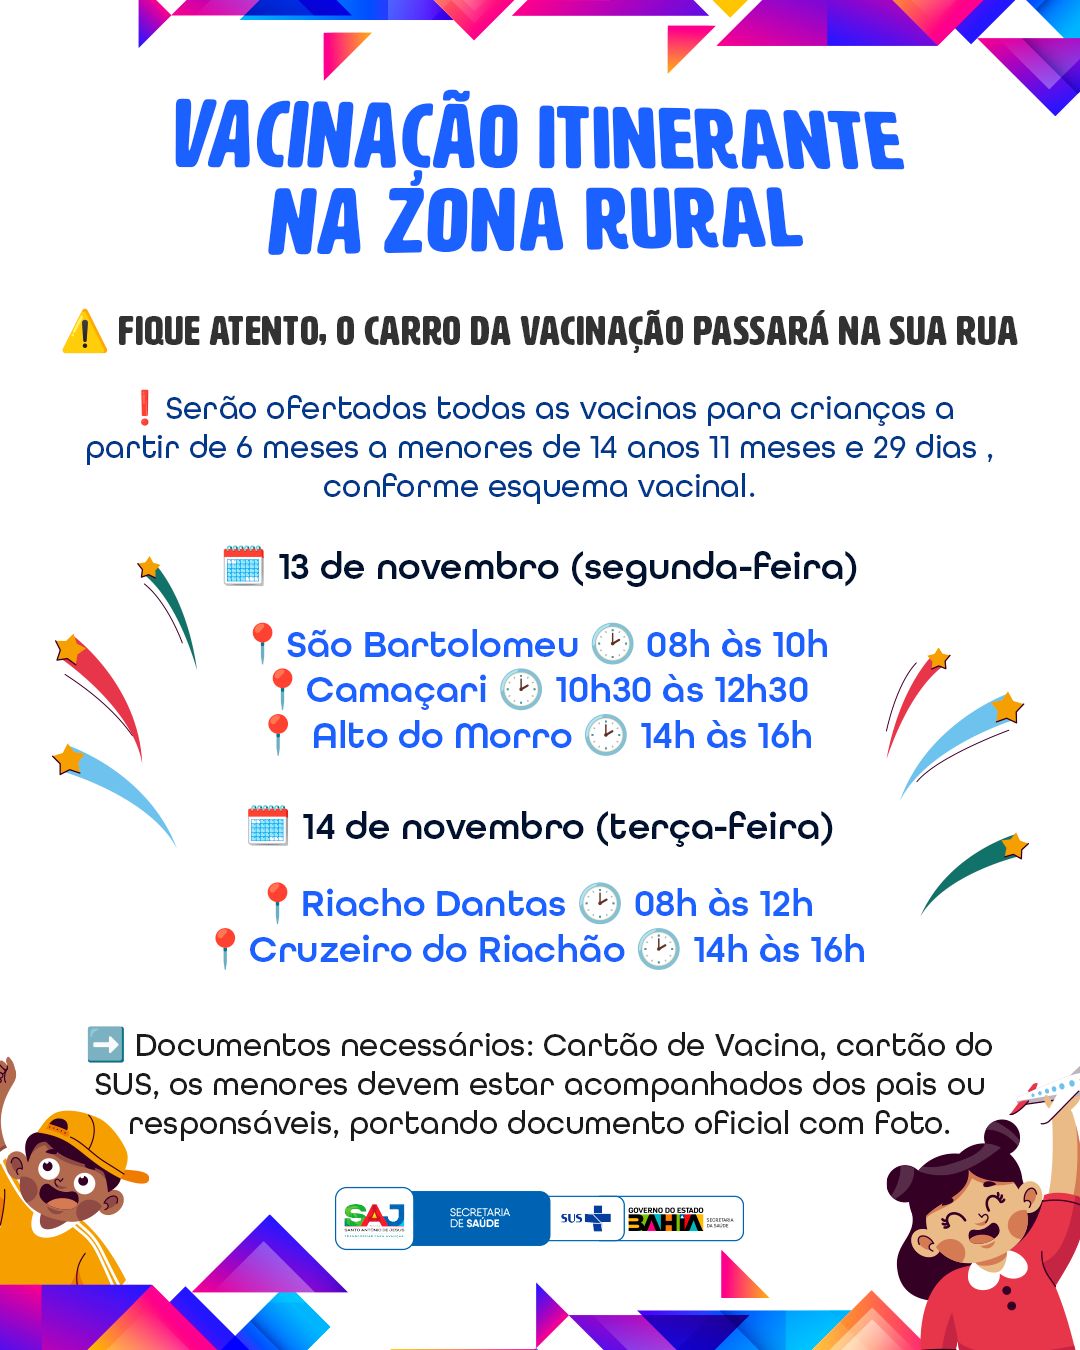 Prefeitura de Santo Antônio de Jesus realizará, com apoio da SESAB, Vacinação Itinerante na Zona Rural